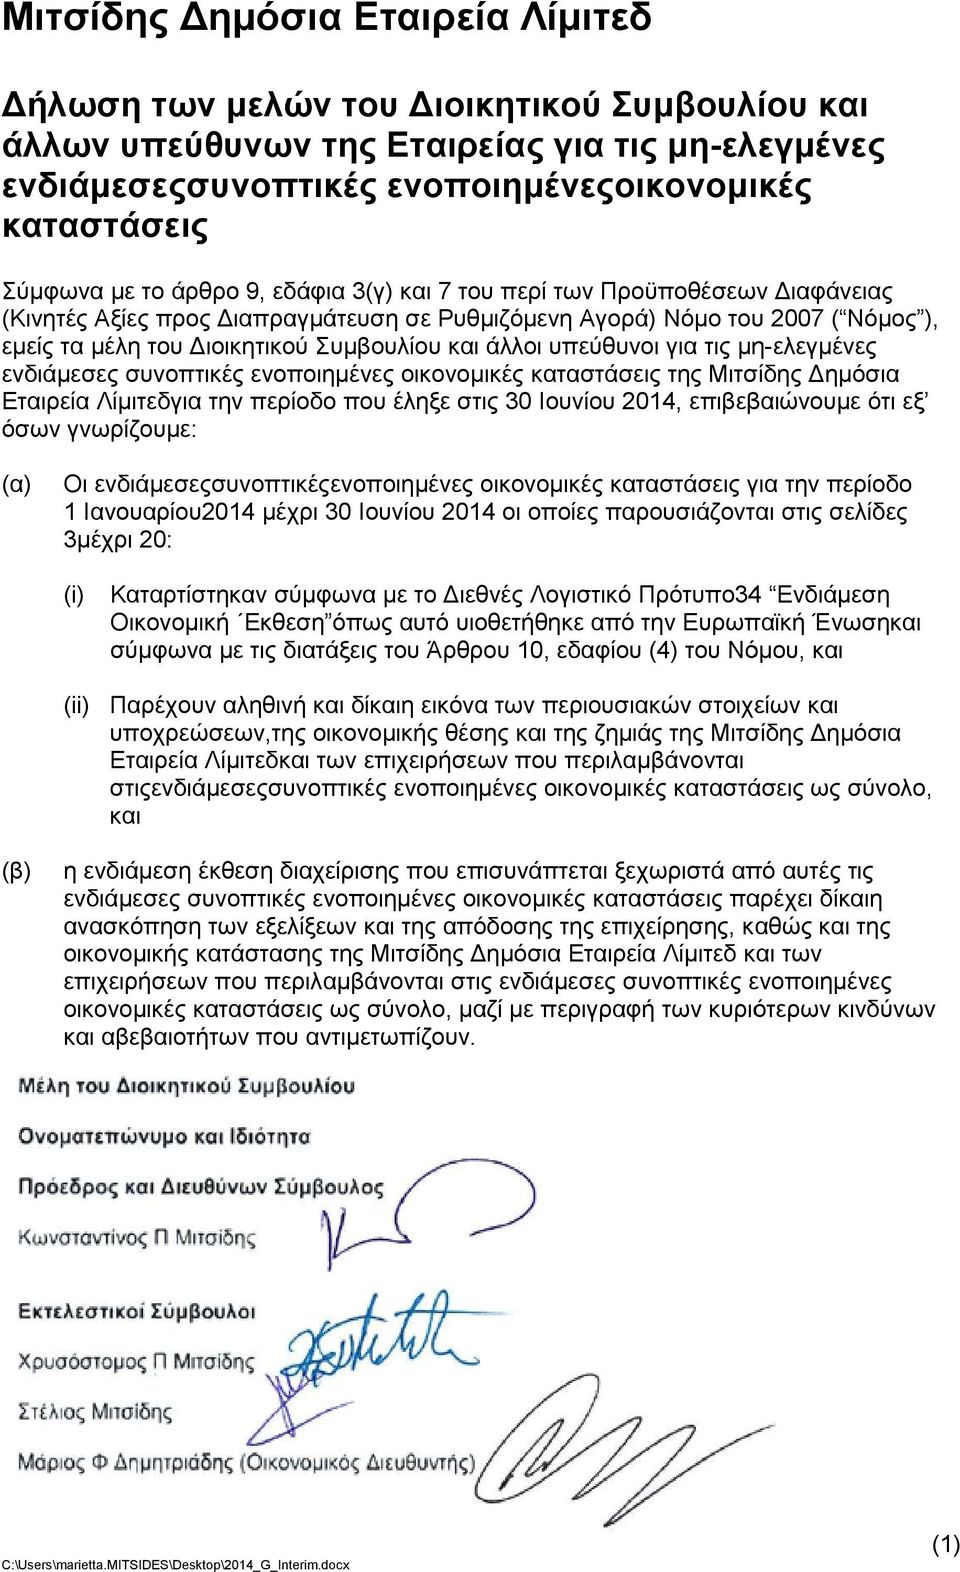 μη-ελεγμένες ενδιάμεσες συνοπτικές ενοποιημένες οικονομικές καταστάσεις της Μιτσίδης Δημόσια Εταιρεία Λίμιτεδγια την περίοδο που έληξε στις 30 Ιουνίου 2014, επιβεβαιώνουμε ότι εξ όσων γνωρίζουμε: (α)